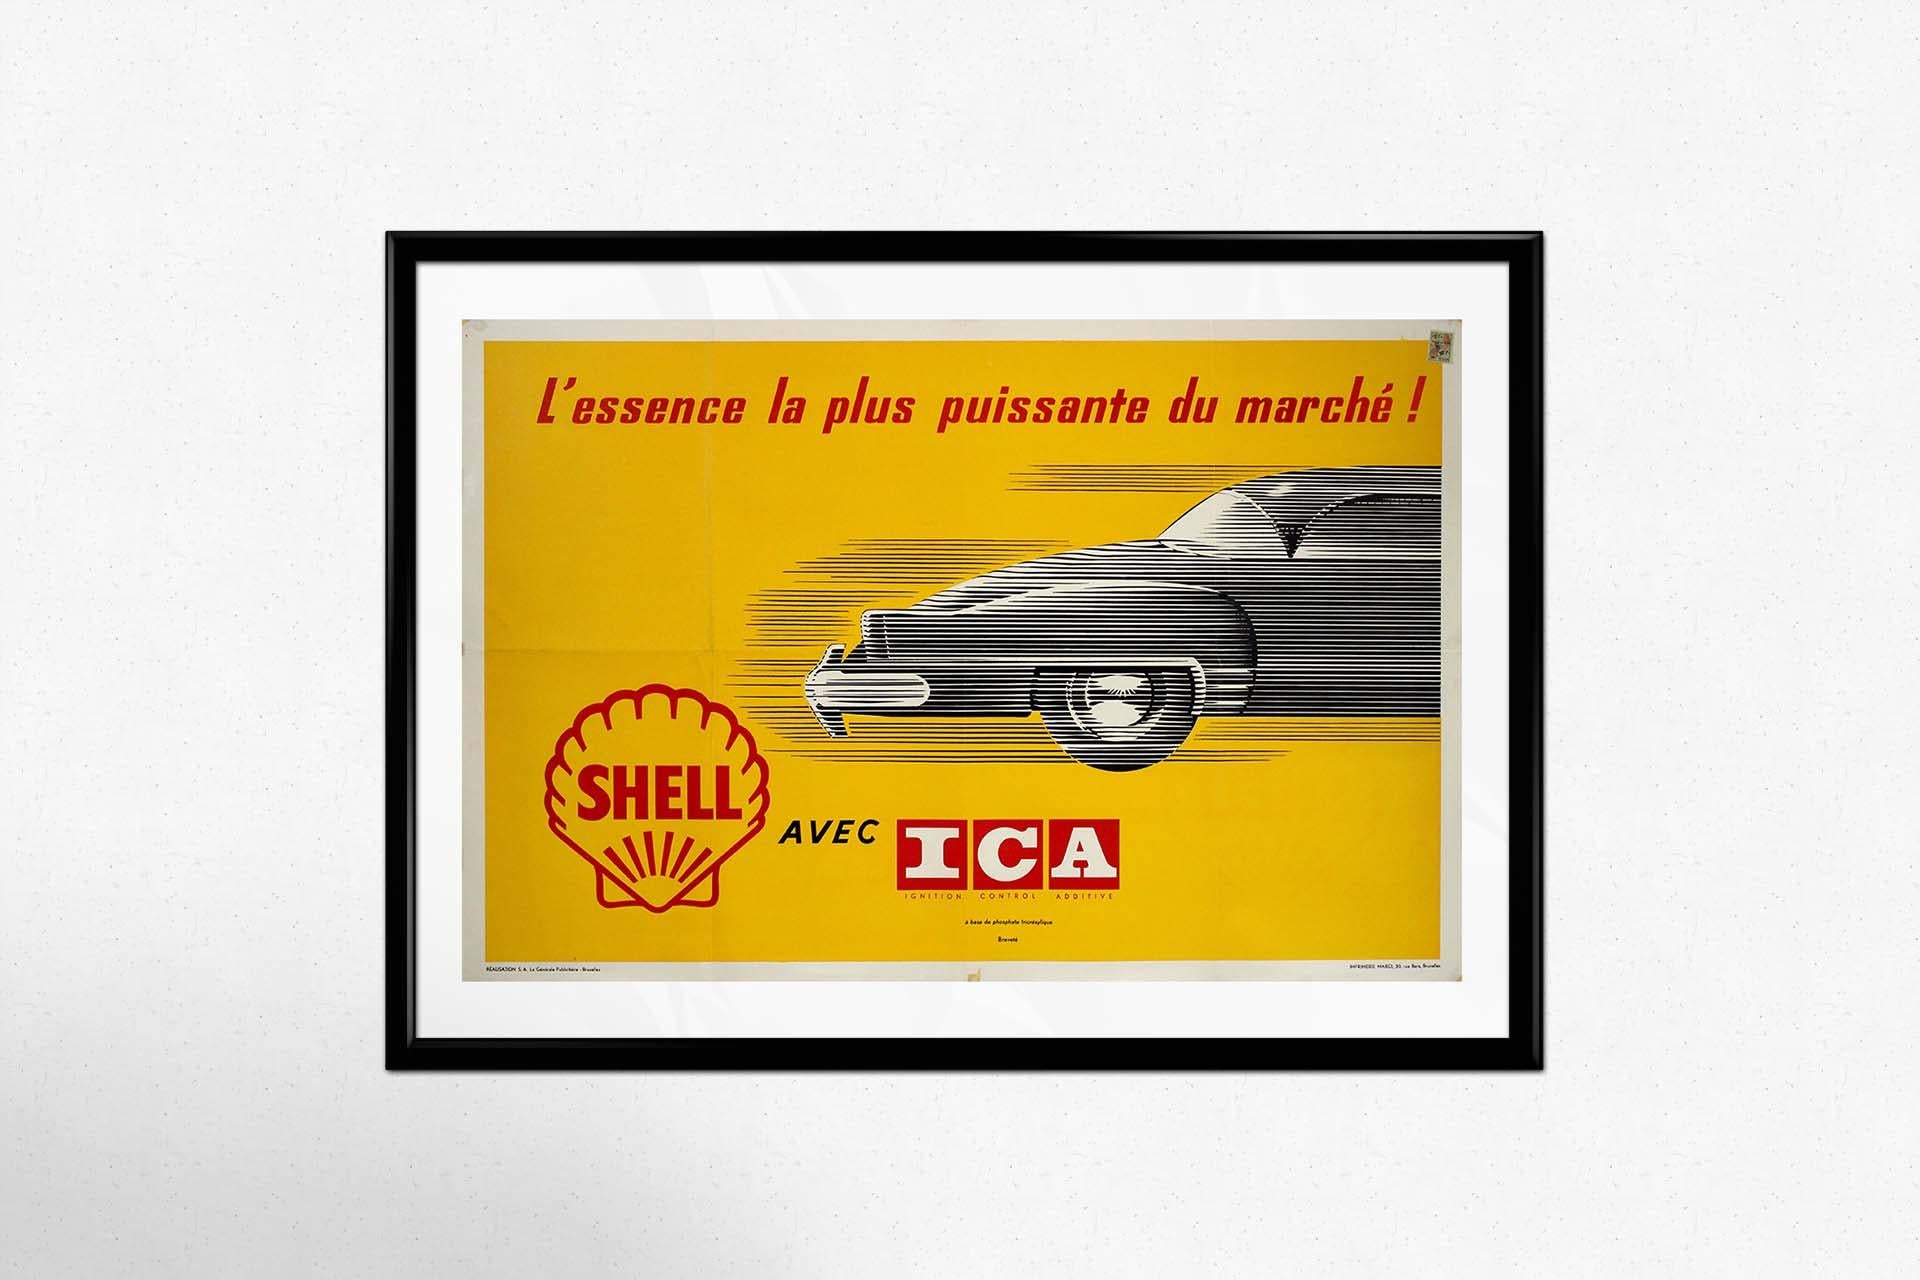 Dans le domaine des affiches de voyage publicitaires anciennes, une pièce emblématique se distingue : l'affiche originale de Shell présentant l'Ignition Control Additive (ICA), présenté comme le carburant le plus puissant du marché. Imprimée par